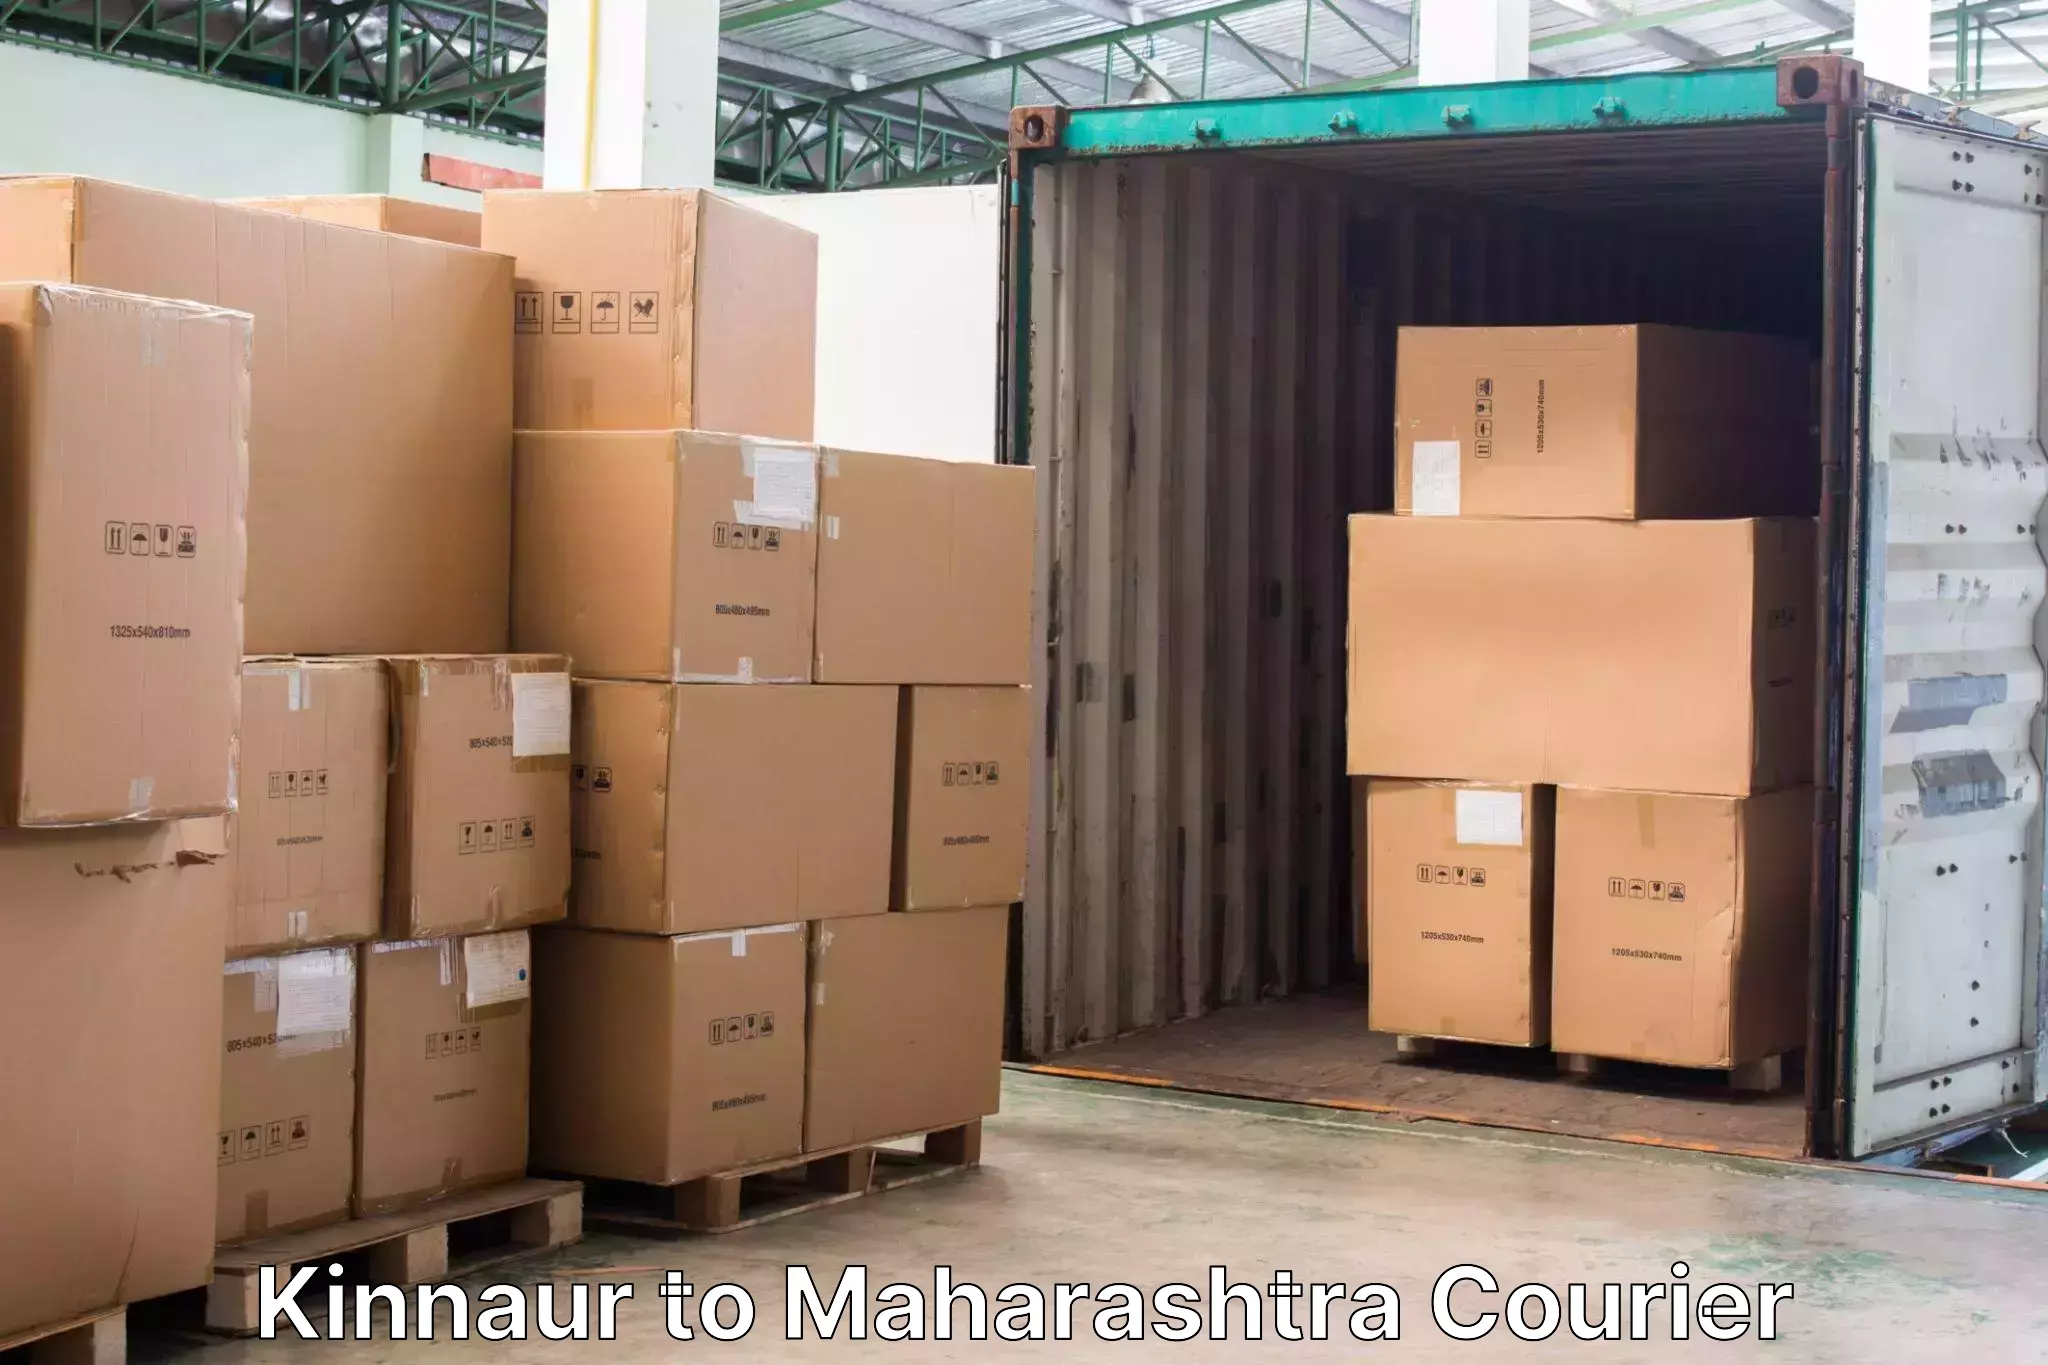 Luggage shipping service Kinnaur to Lonar